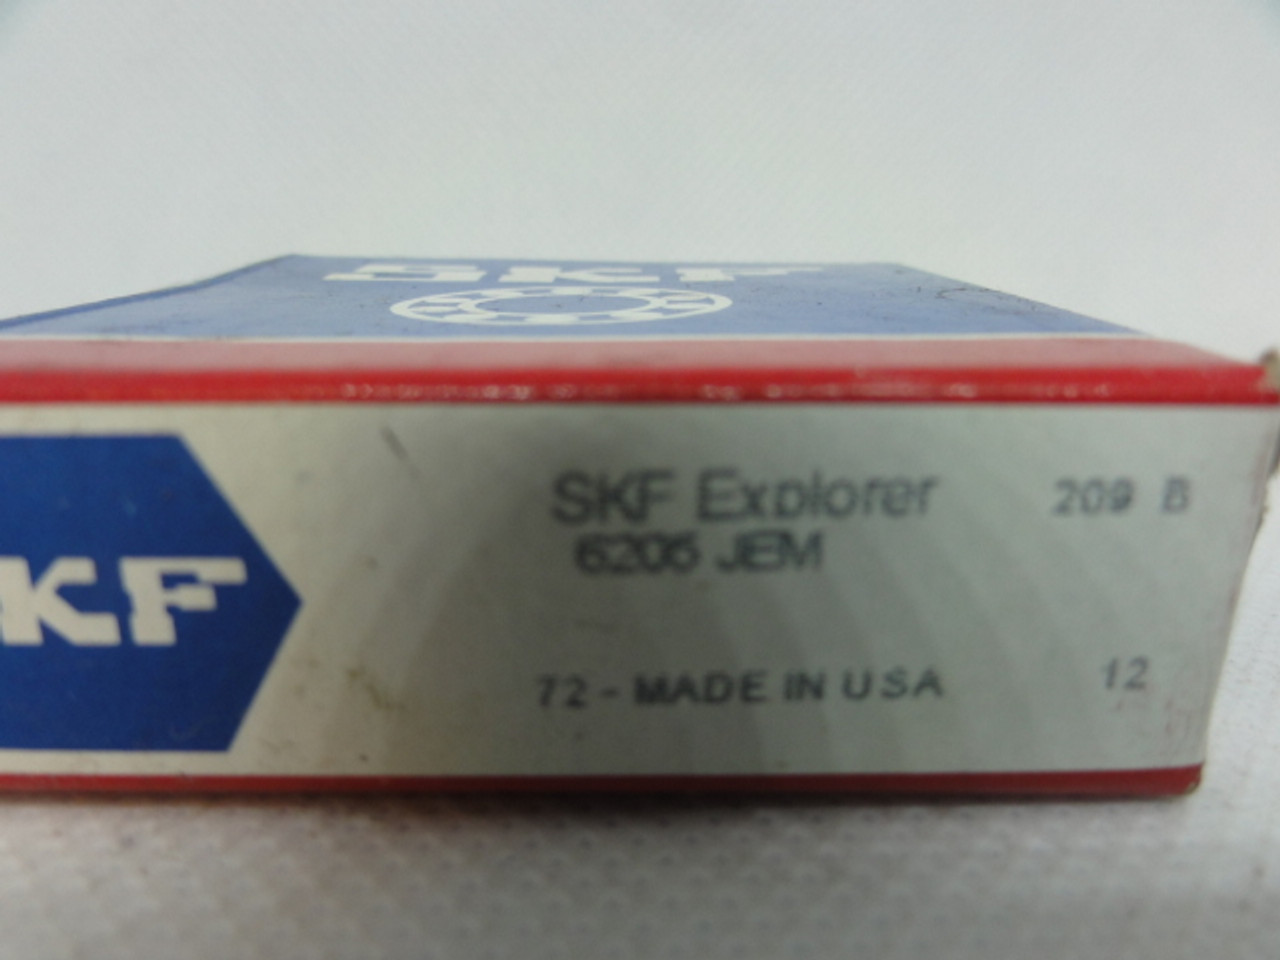 SKF Explorer 6205-JEM Ball Bearing